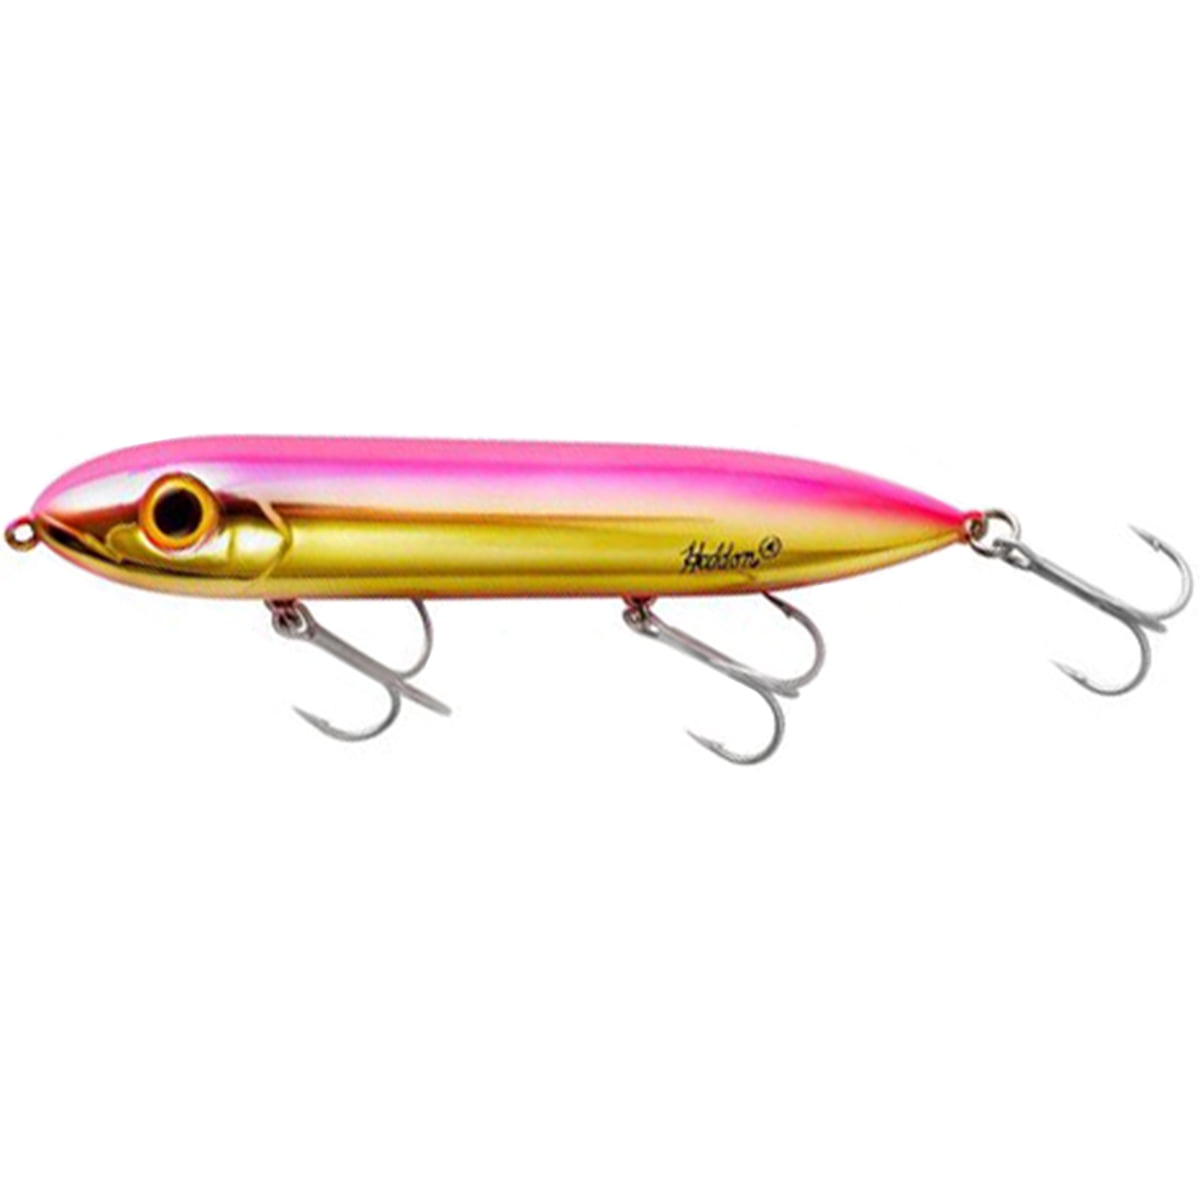 Heddon Super Spook 7/8 oz Saltwater Fishing Lure - Gold/Pink